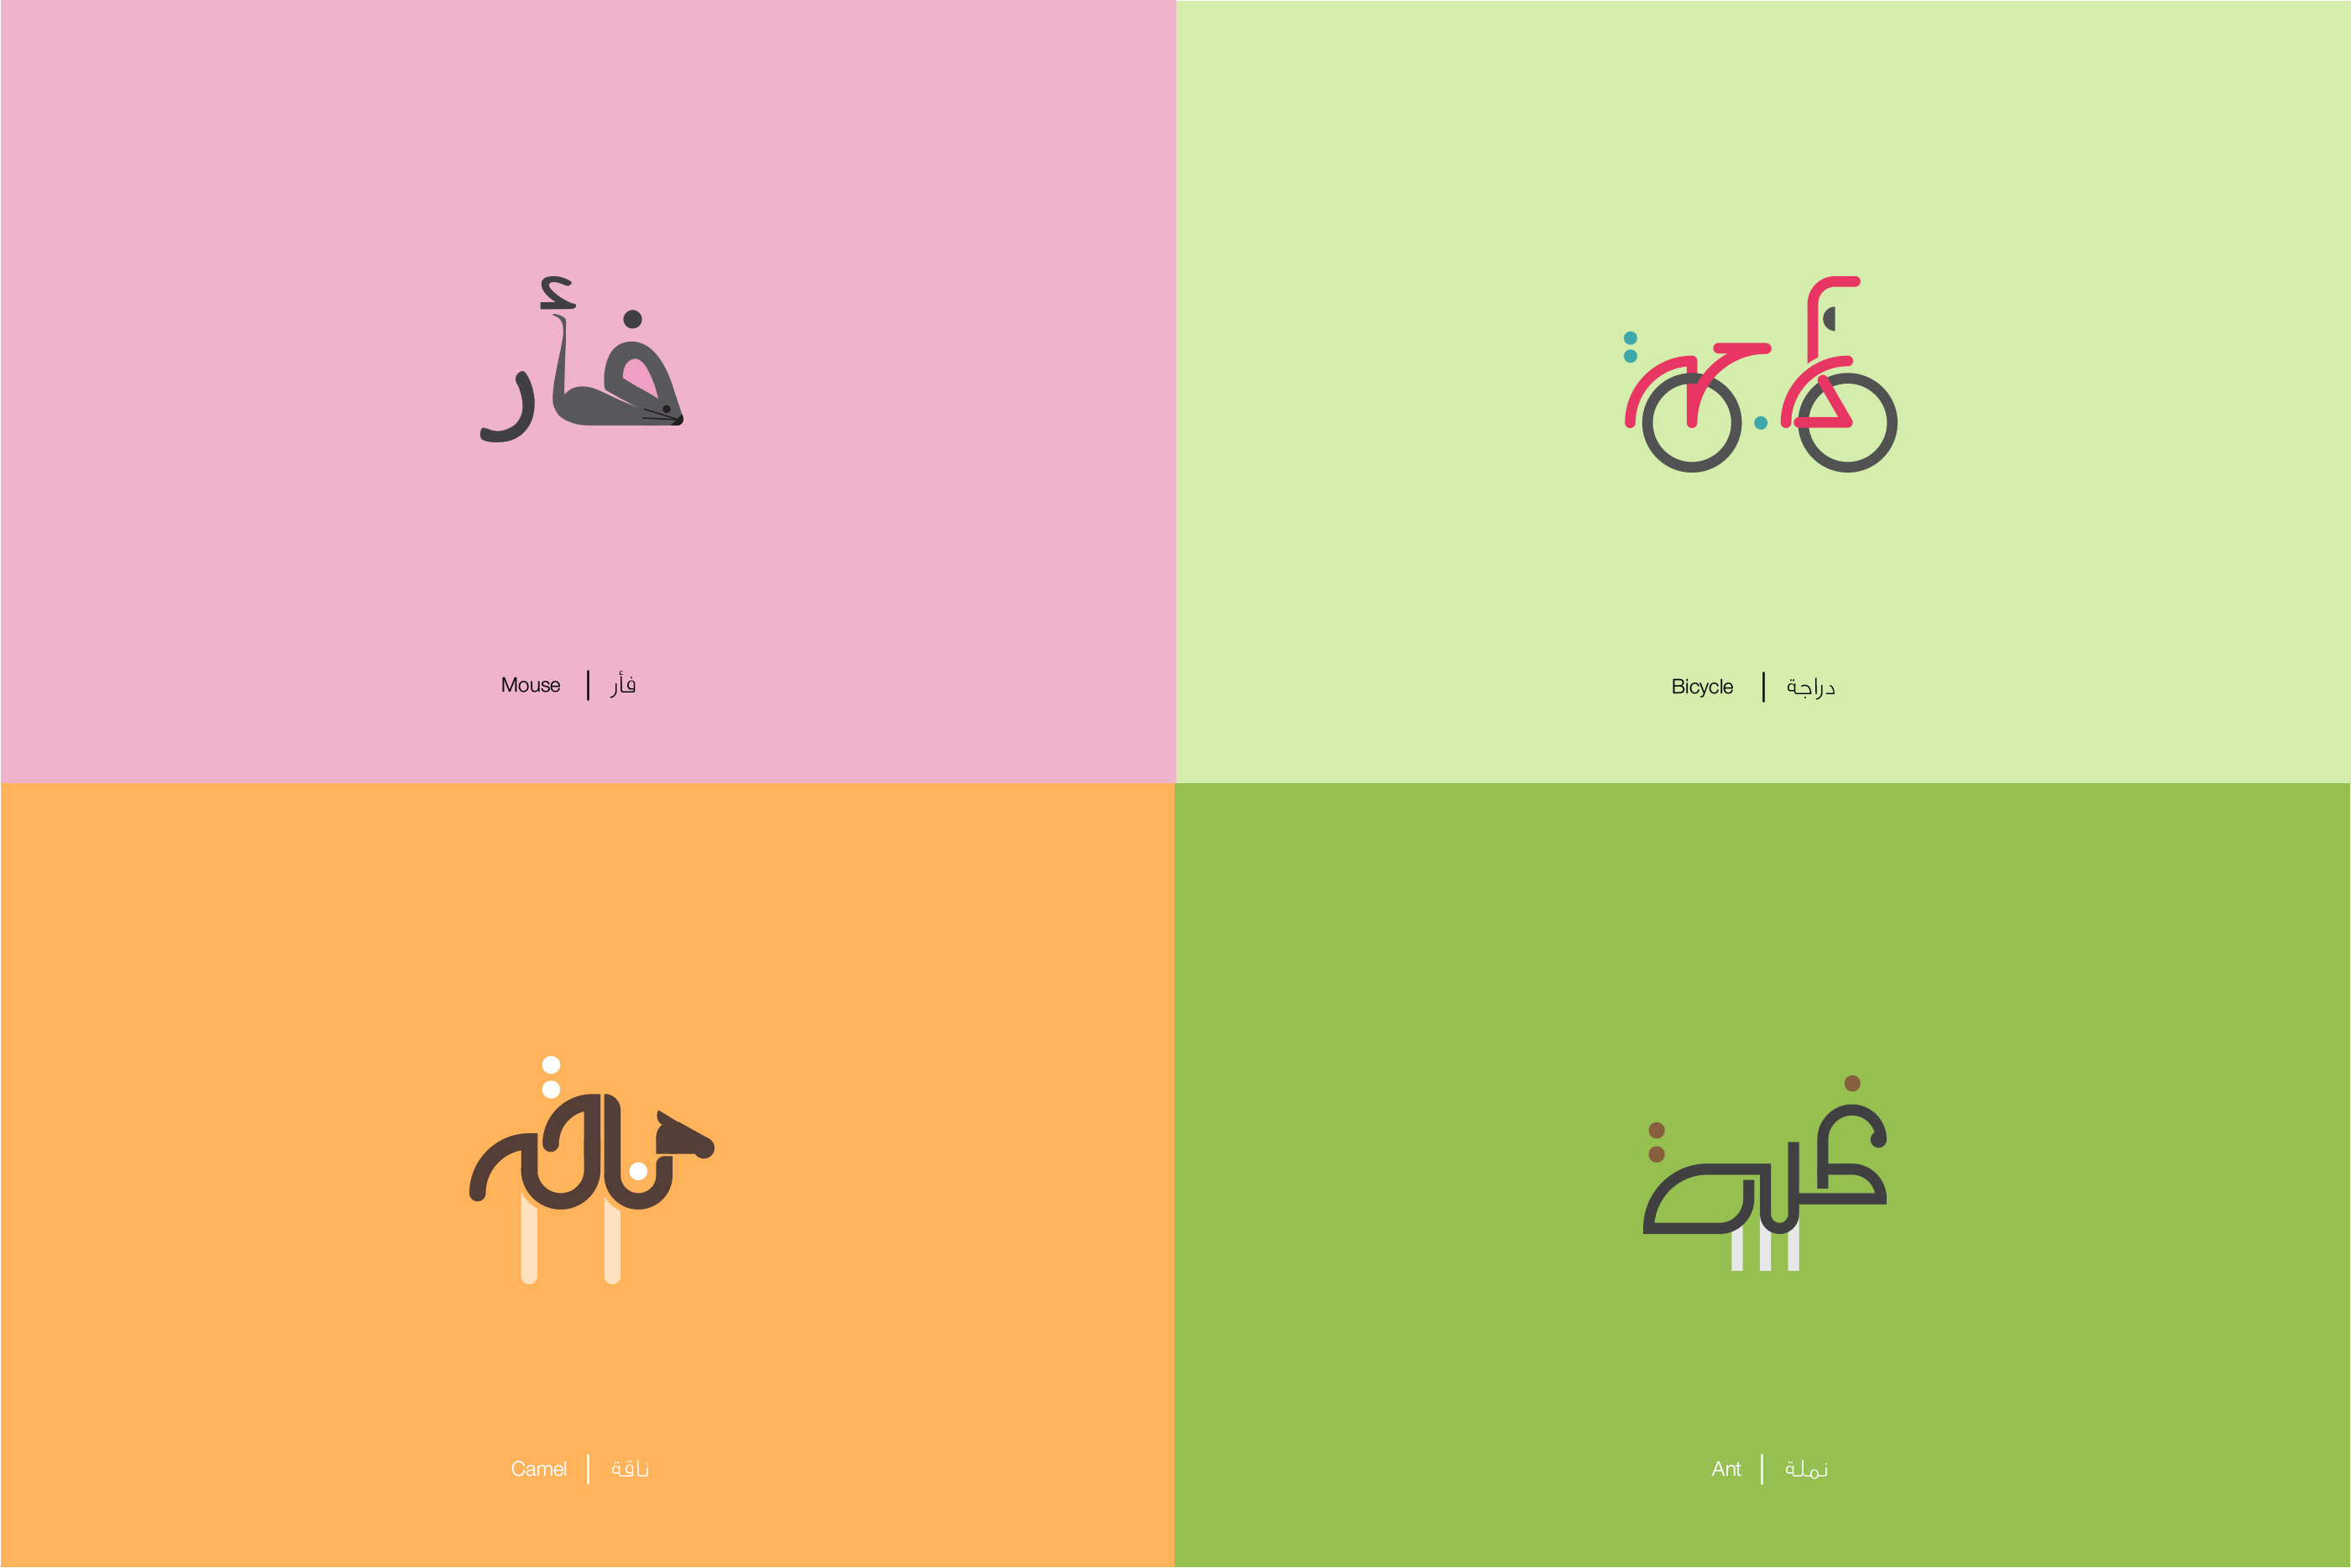 apprenez des mots de la langue arabe avec 39 dessins